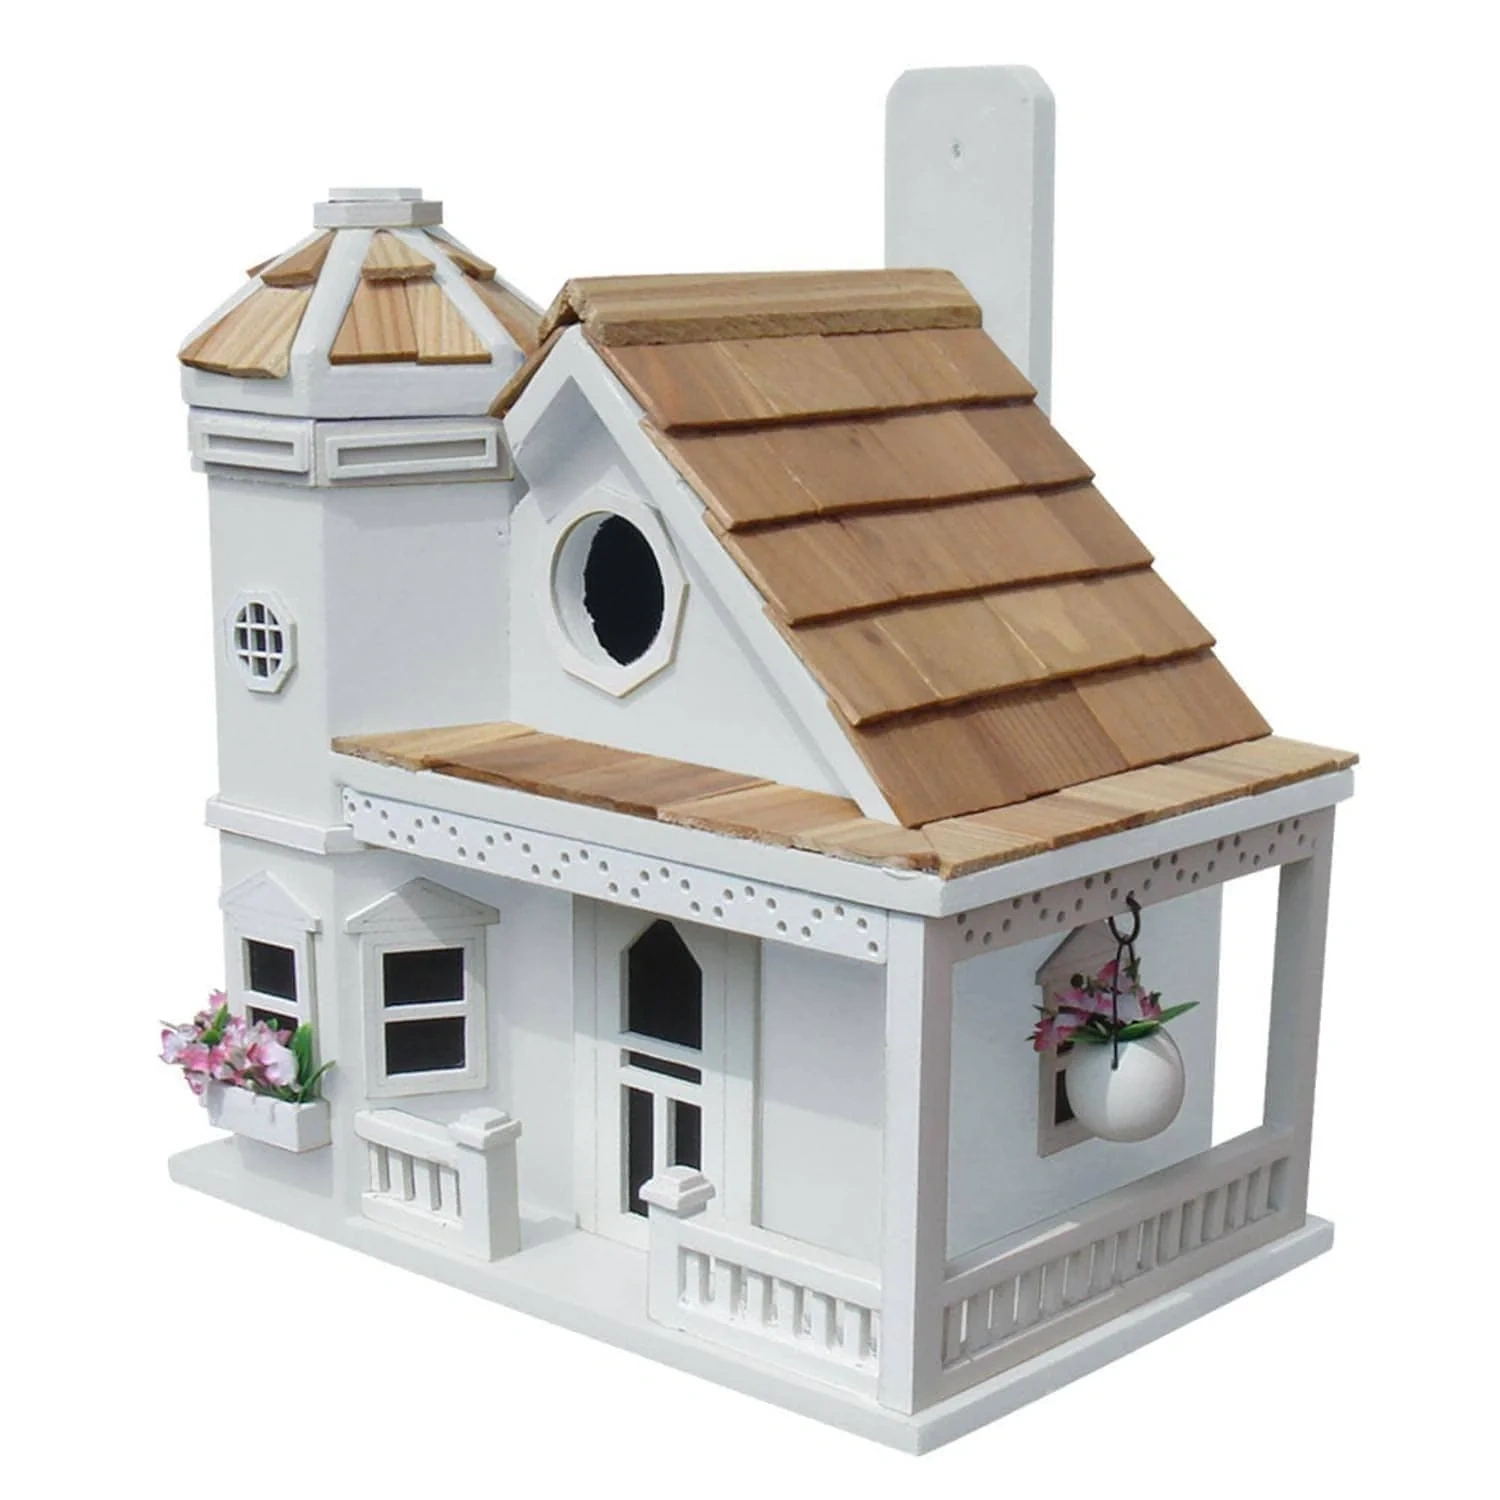 Flower-Pot Cottage Birdhouse